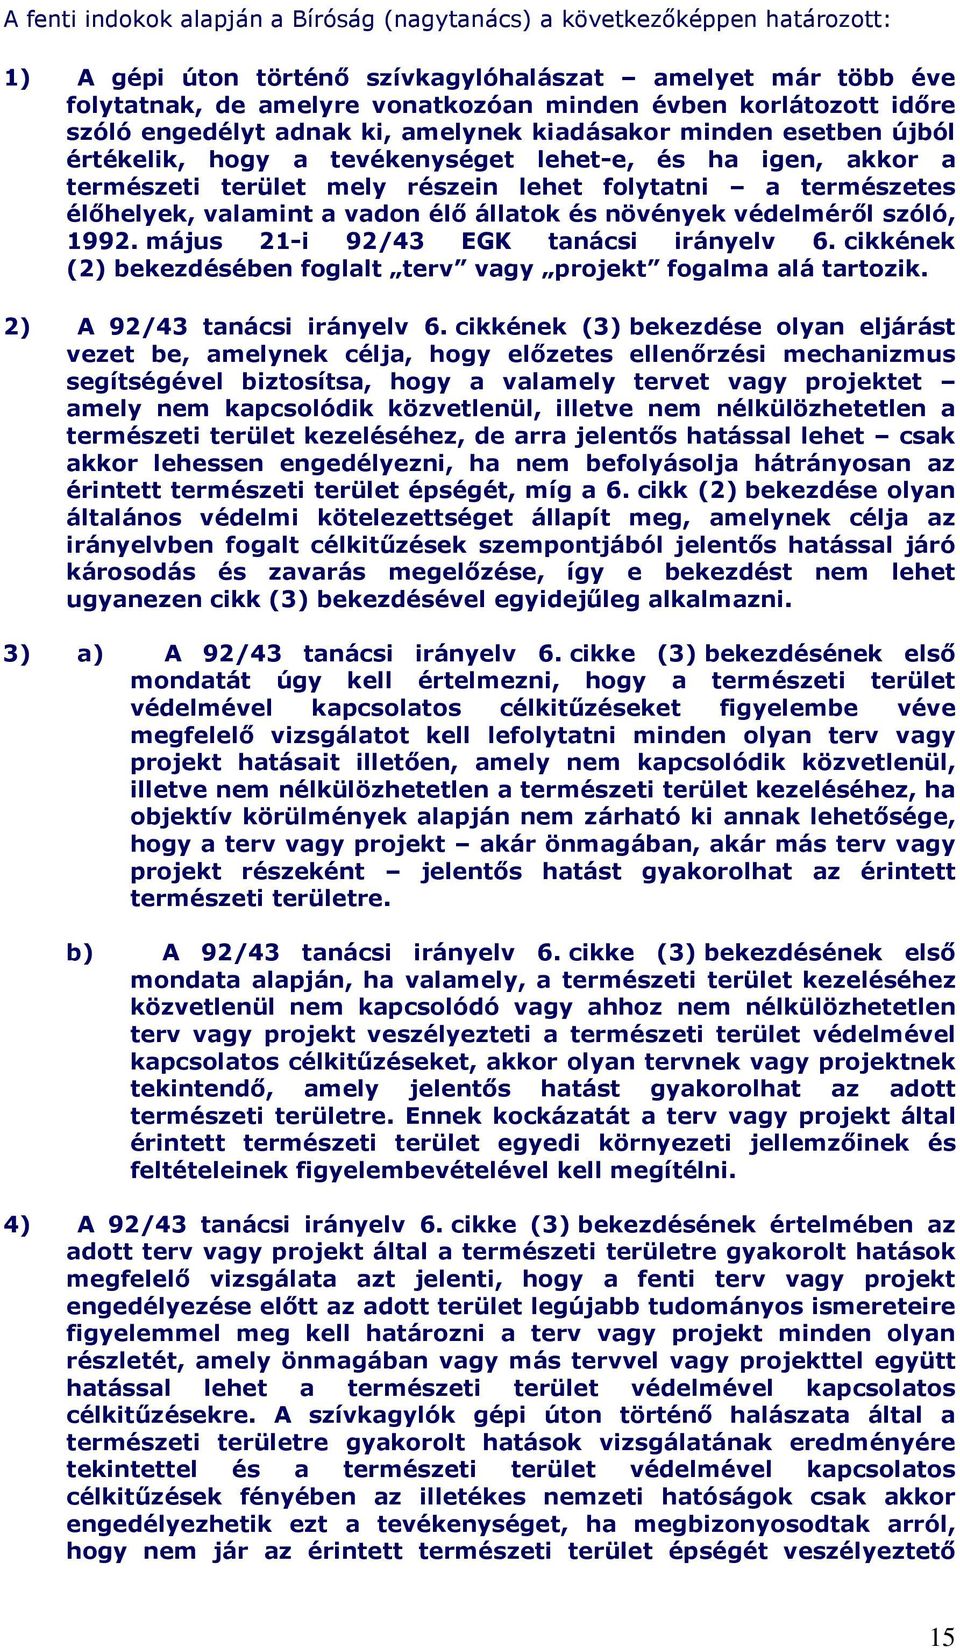 élıhelyek, valamint a vadon élı állatok és növények védelmérıl szóló, 1992. május 21-i 92/43 EGK tanácsi irányelv 6. cikkének (2) bekezdésében foglalt terv vagy projekt fogalma alá tartozik.